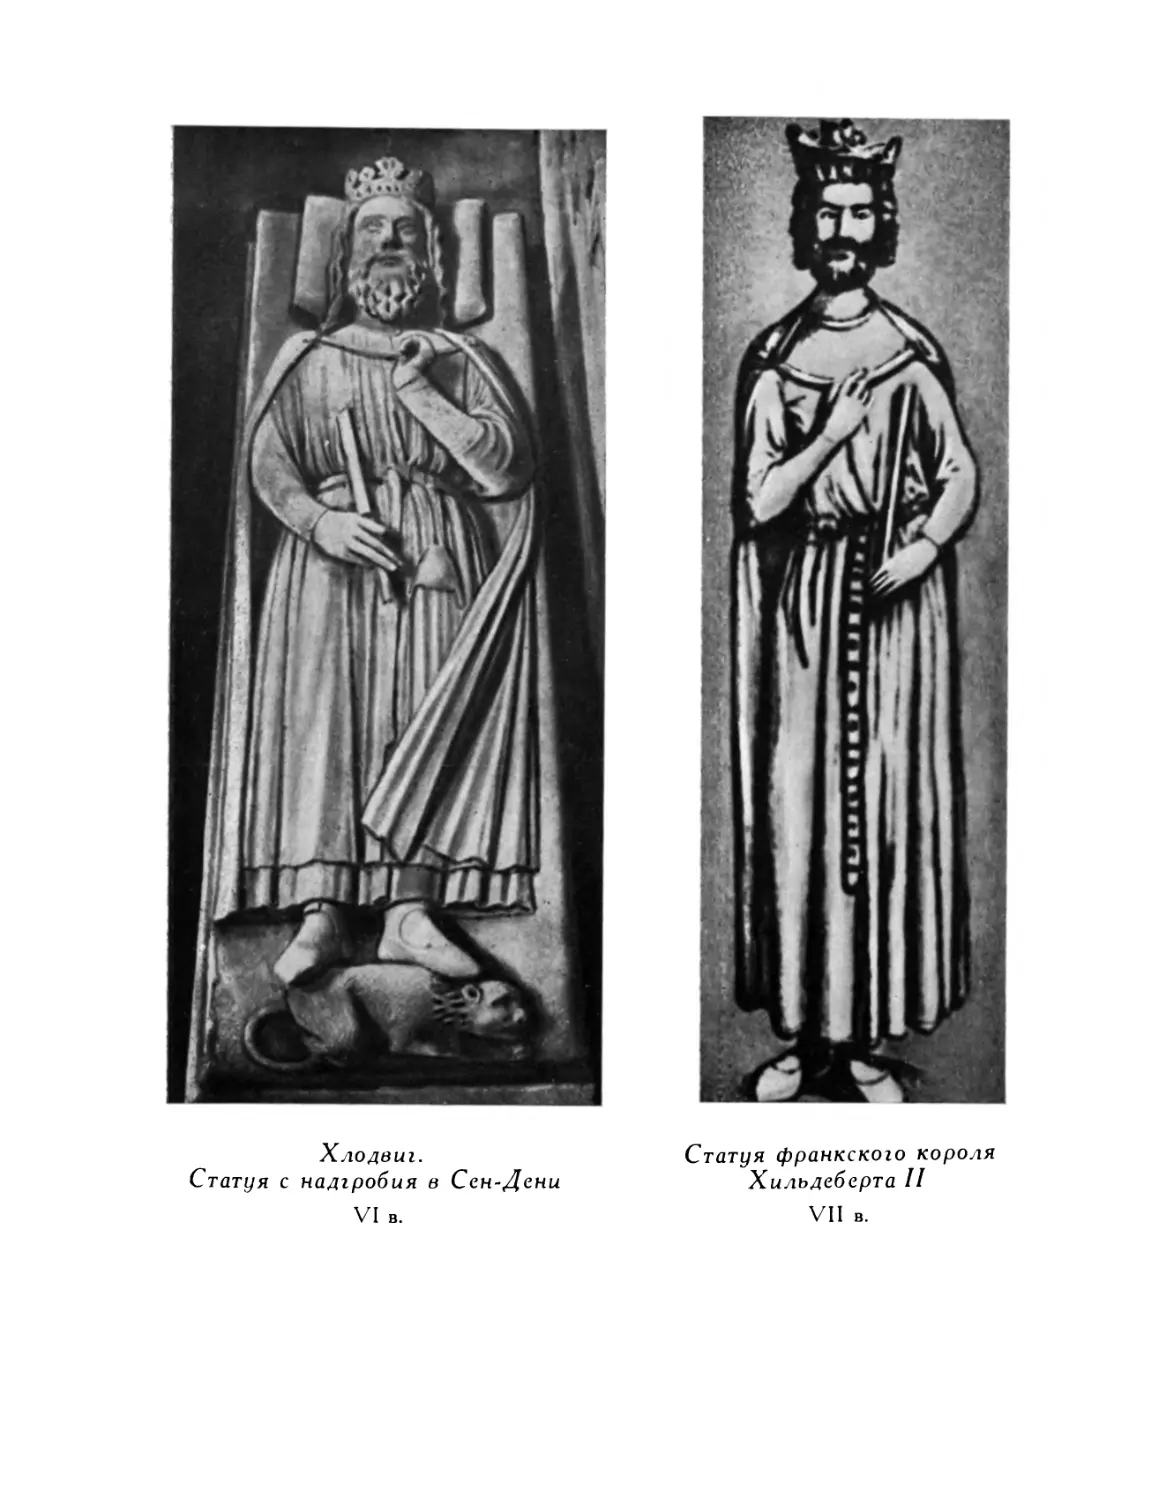 Вклейка. Иллюстрации
Статуя франкского короля Хильдеберта II. VII в.